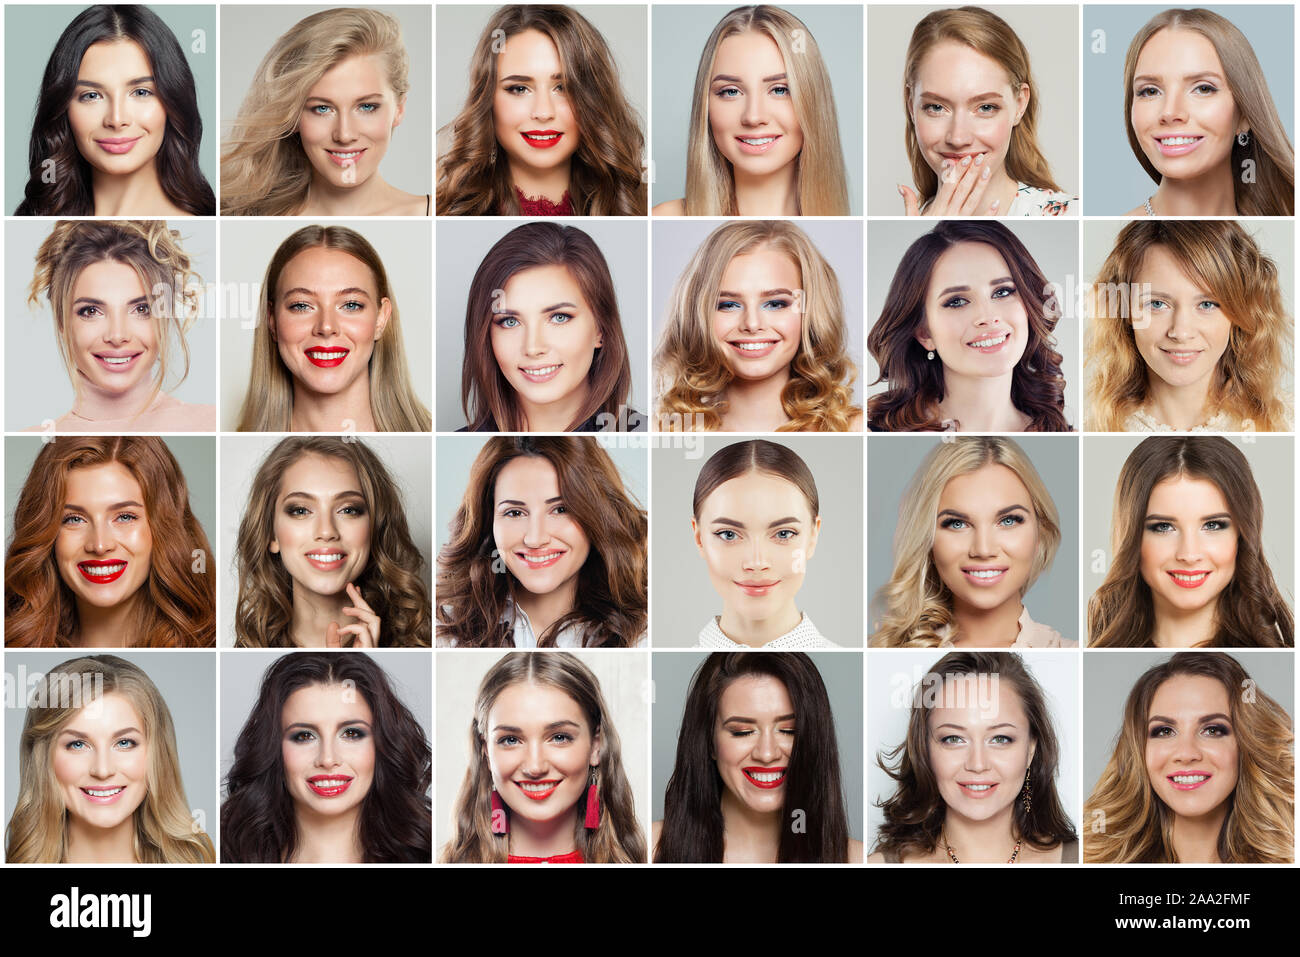 Verschiedene Frauen Gesichter Collage. Frau Gesichter lächeln und lachen, positive Emotionen, emotionalen Ausdruck Stockfoto